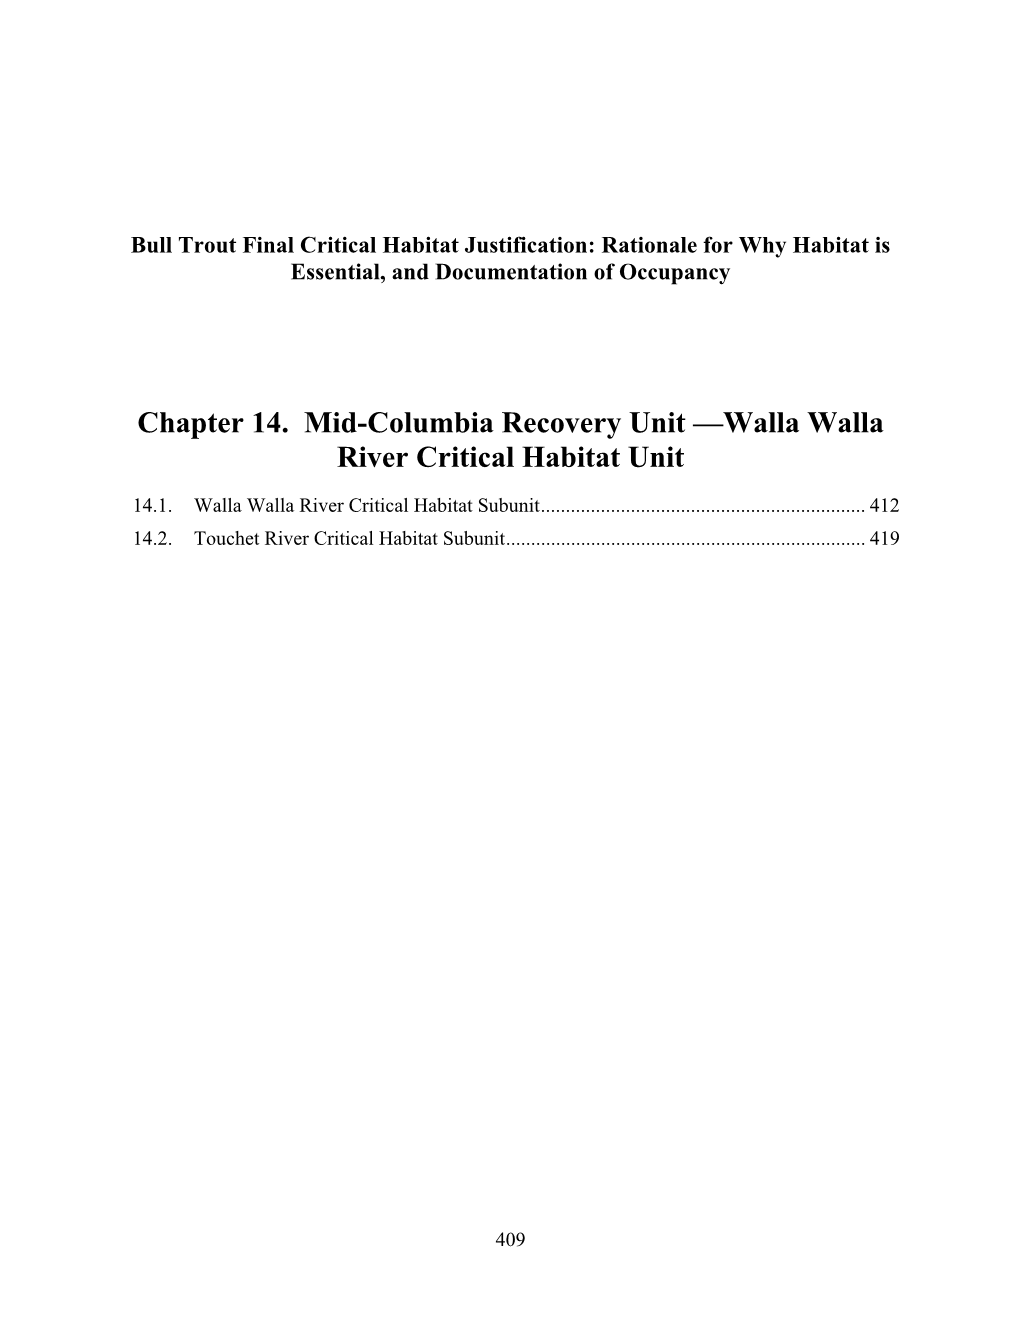 Chapter 14. Mid-Columbia Recovery Unit —Walla Walla River Critical Habitat Unit